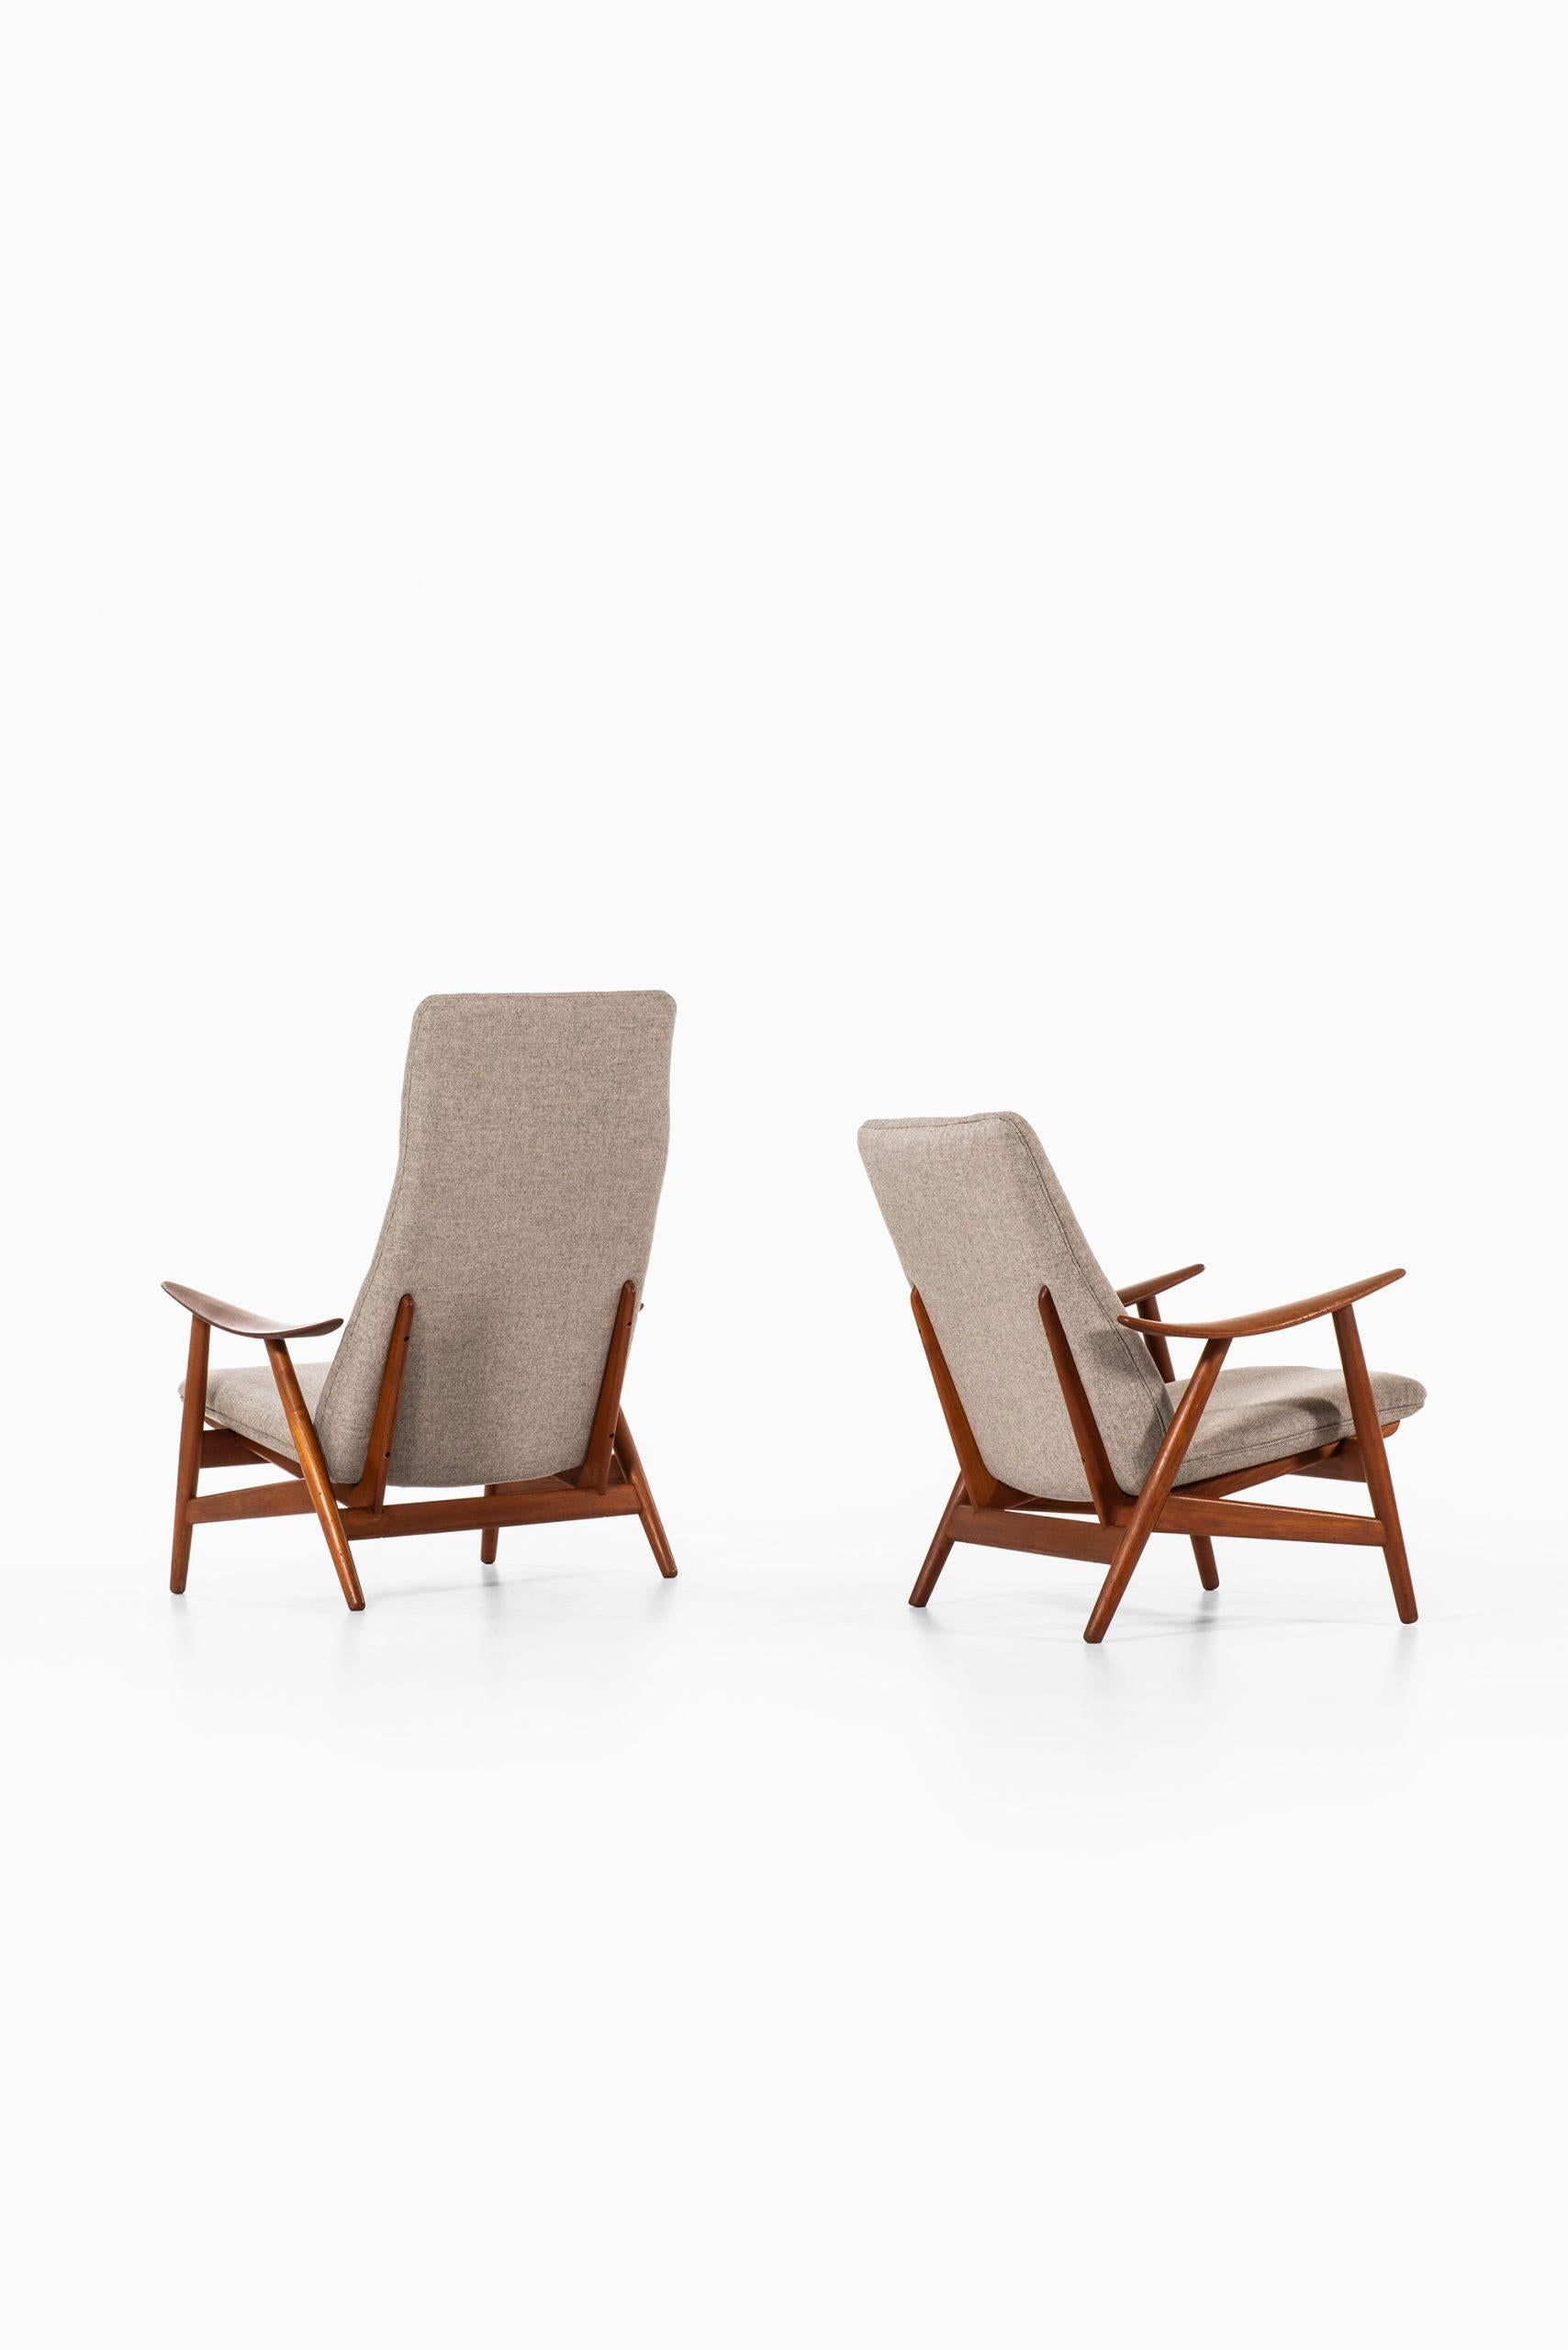 Fabric Illum Wikkelsø Easy Chairs Model 10 by Søren Willadsen Møbelfabrik in Denmark For Sale